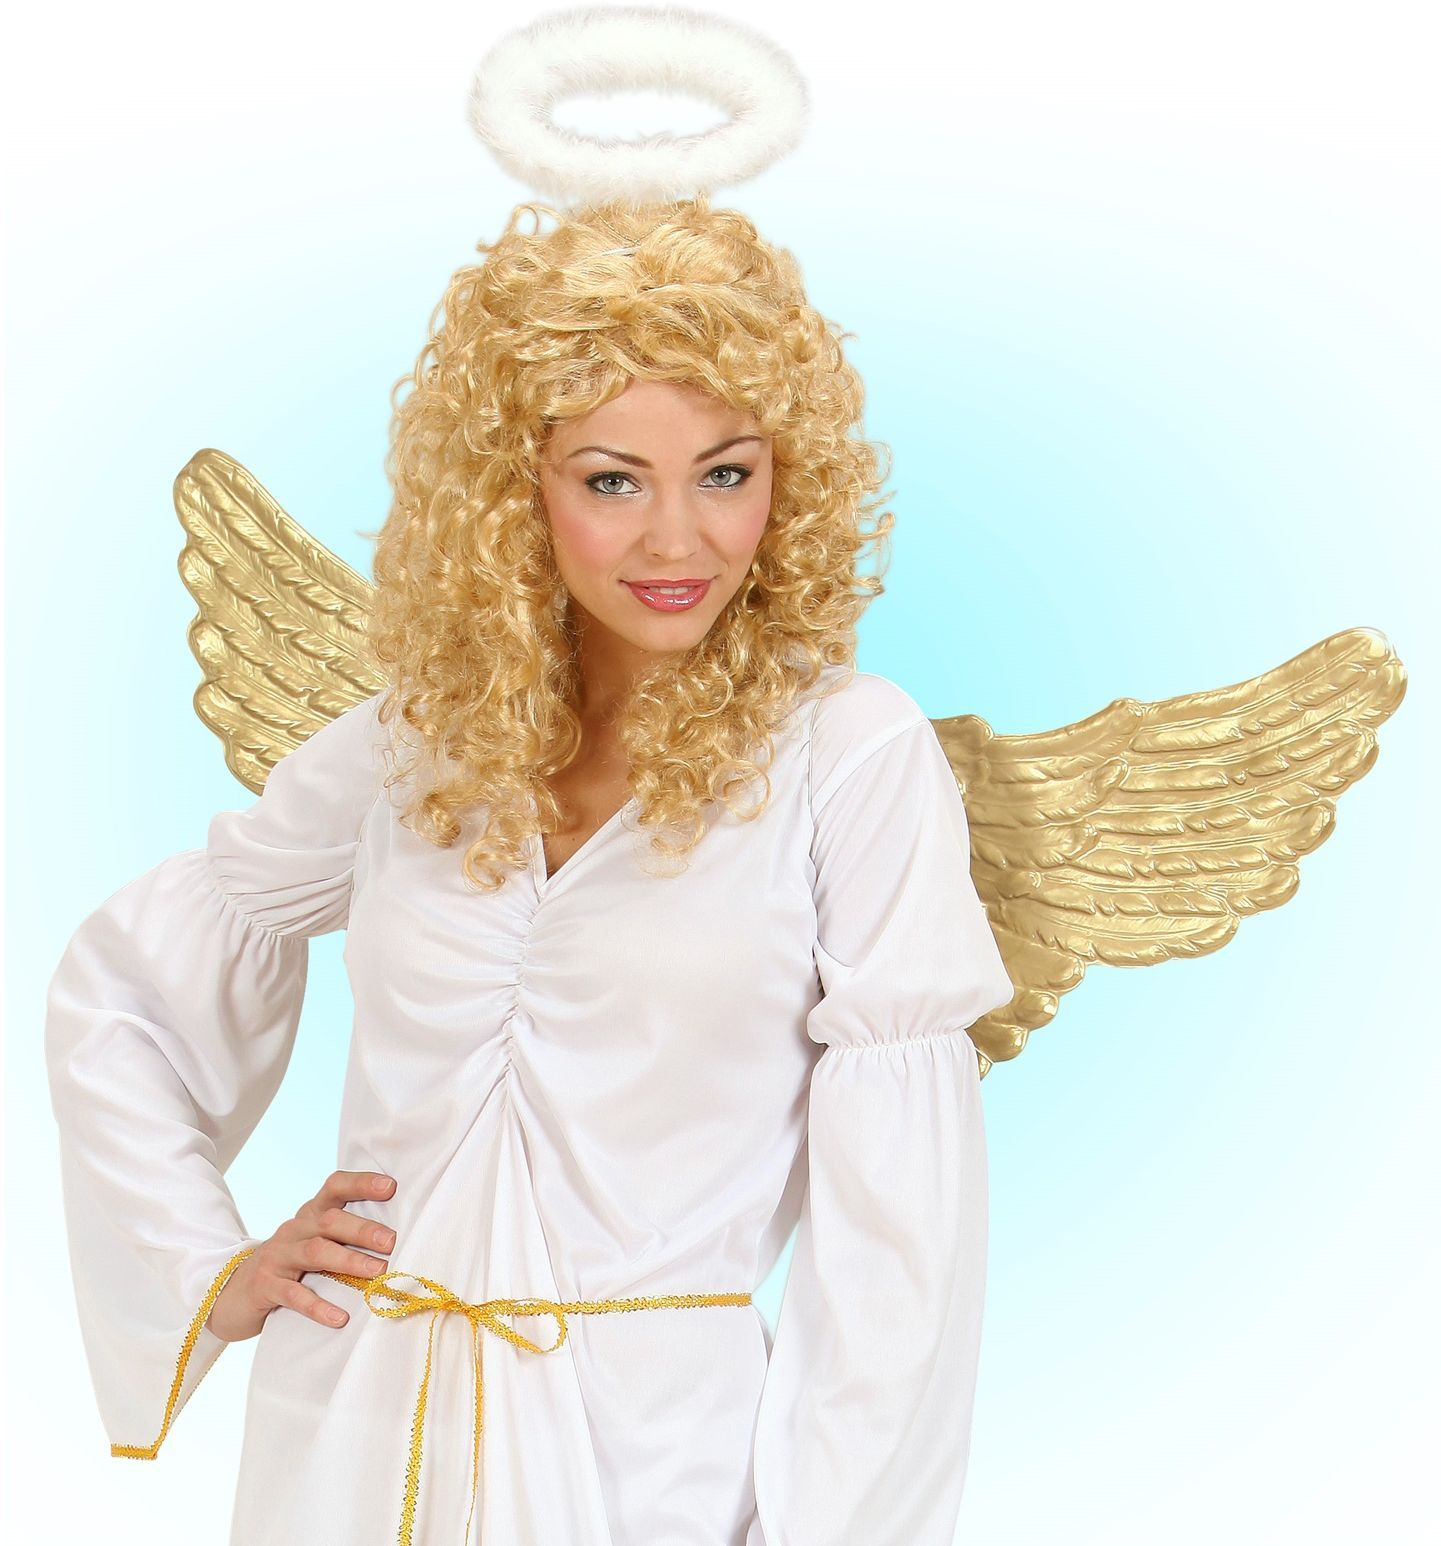 Engel vleugels goud plastic | Carnavalskleding.nl